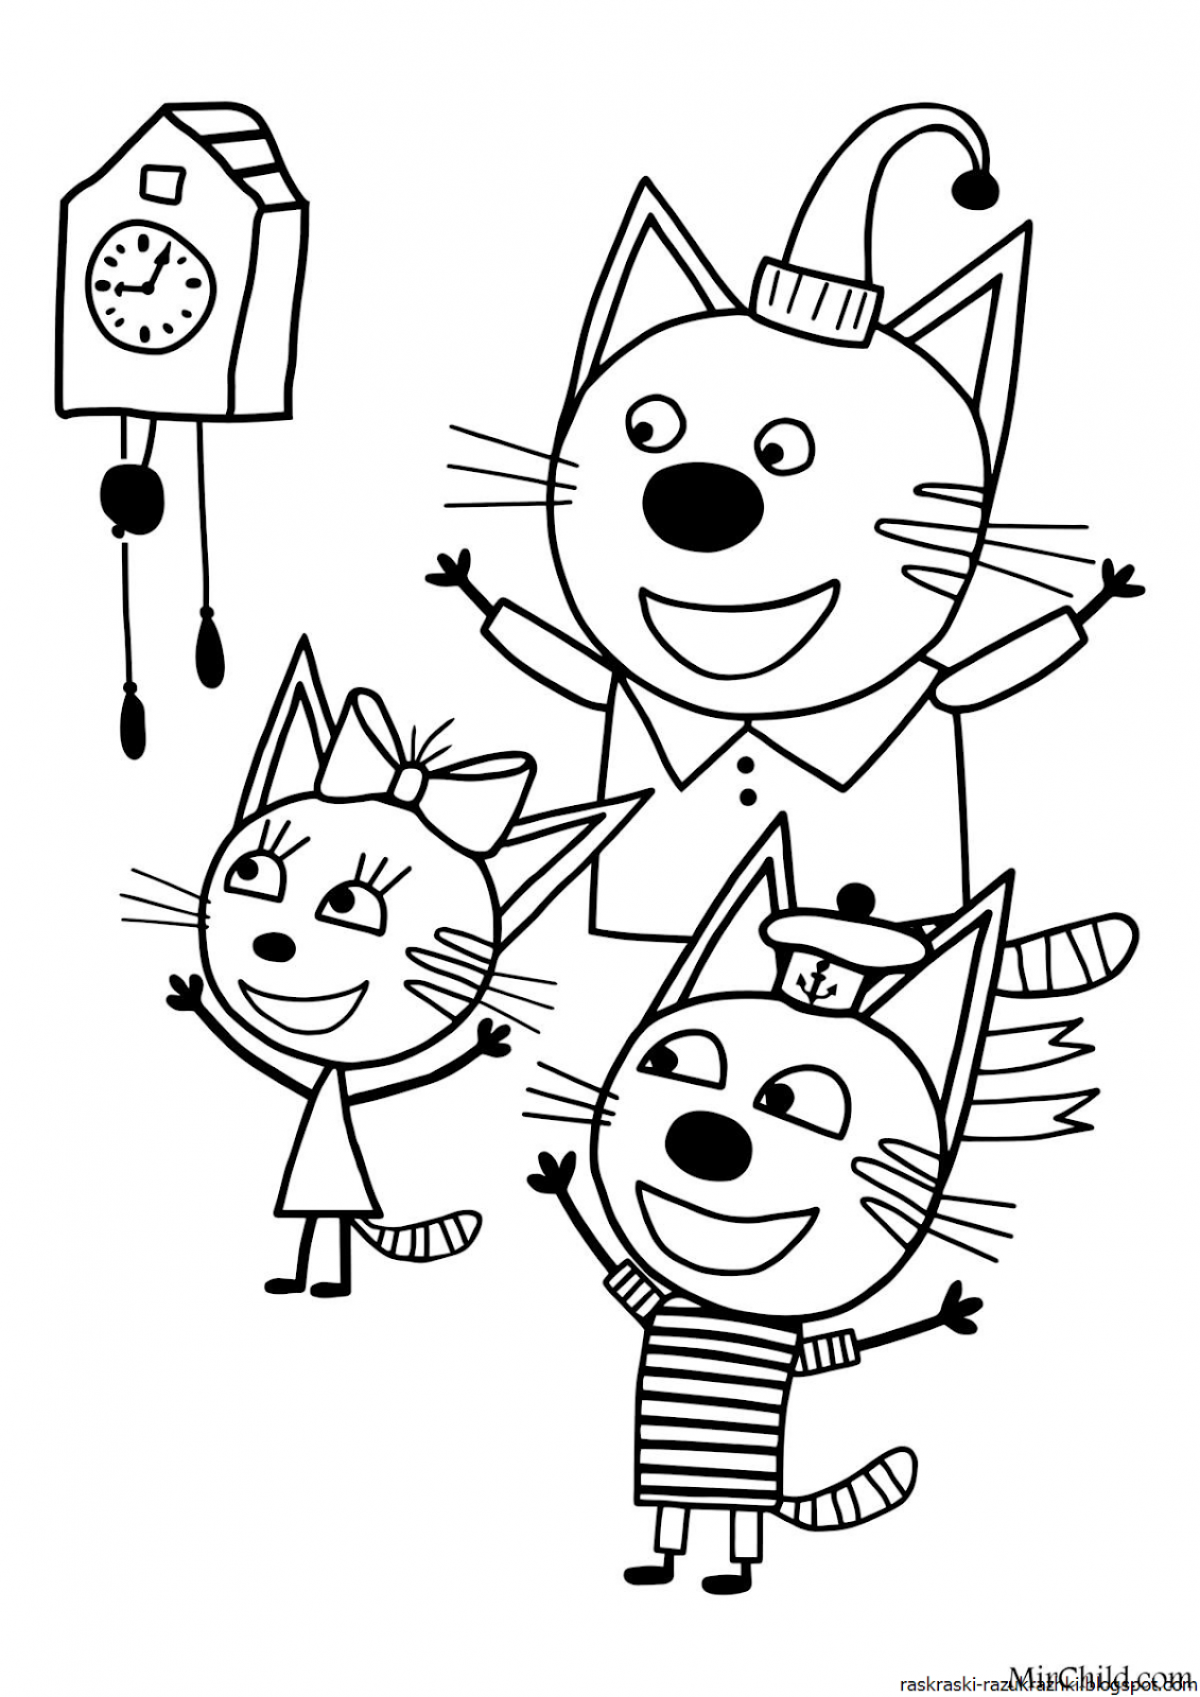 Three cats cartoon #2